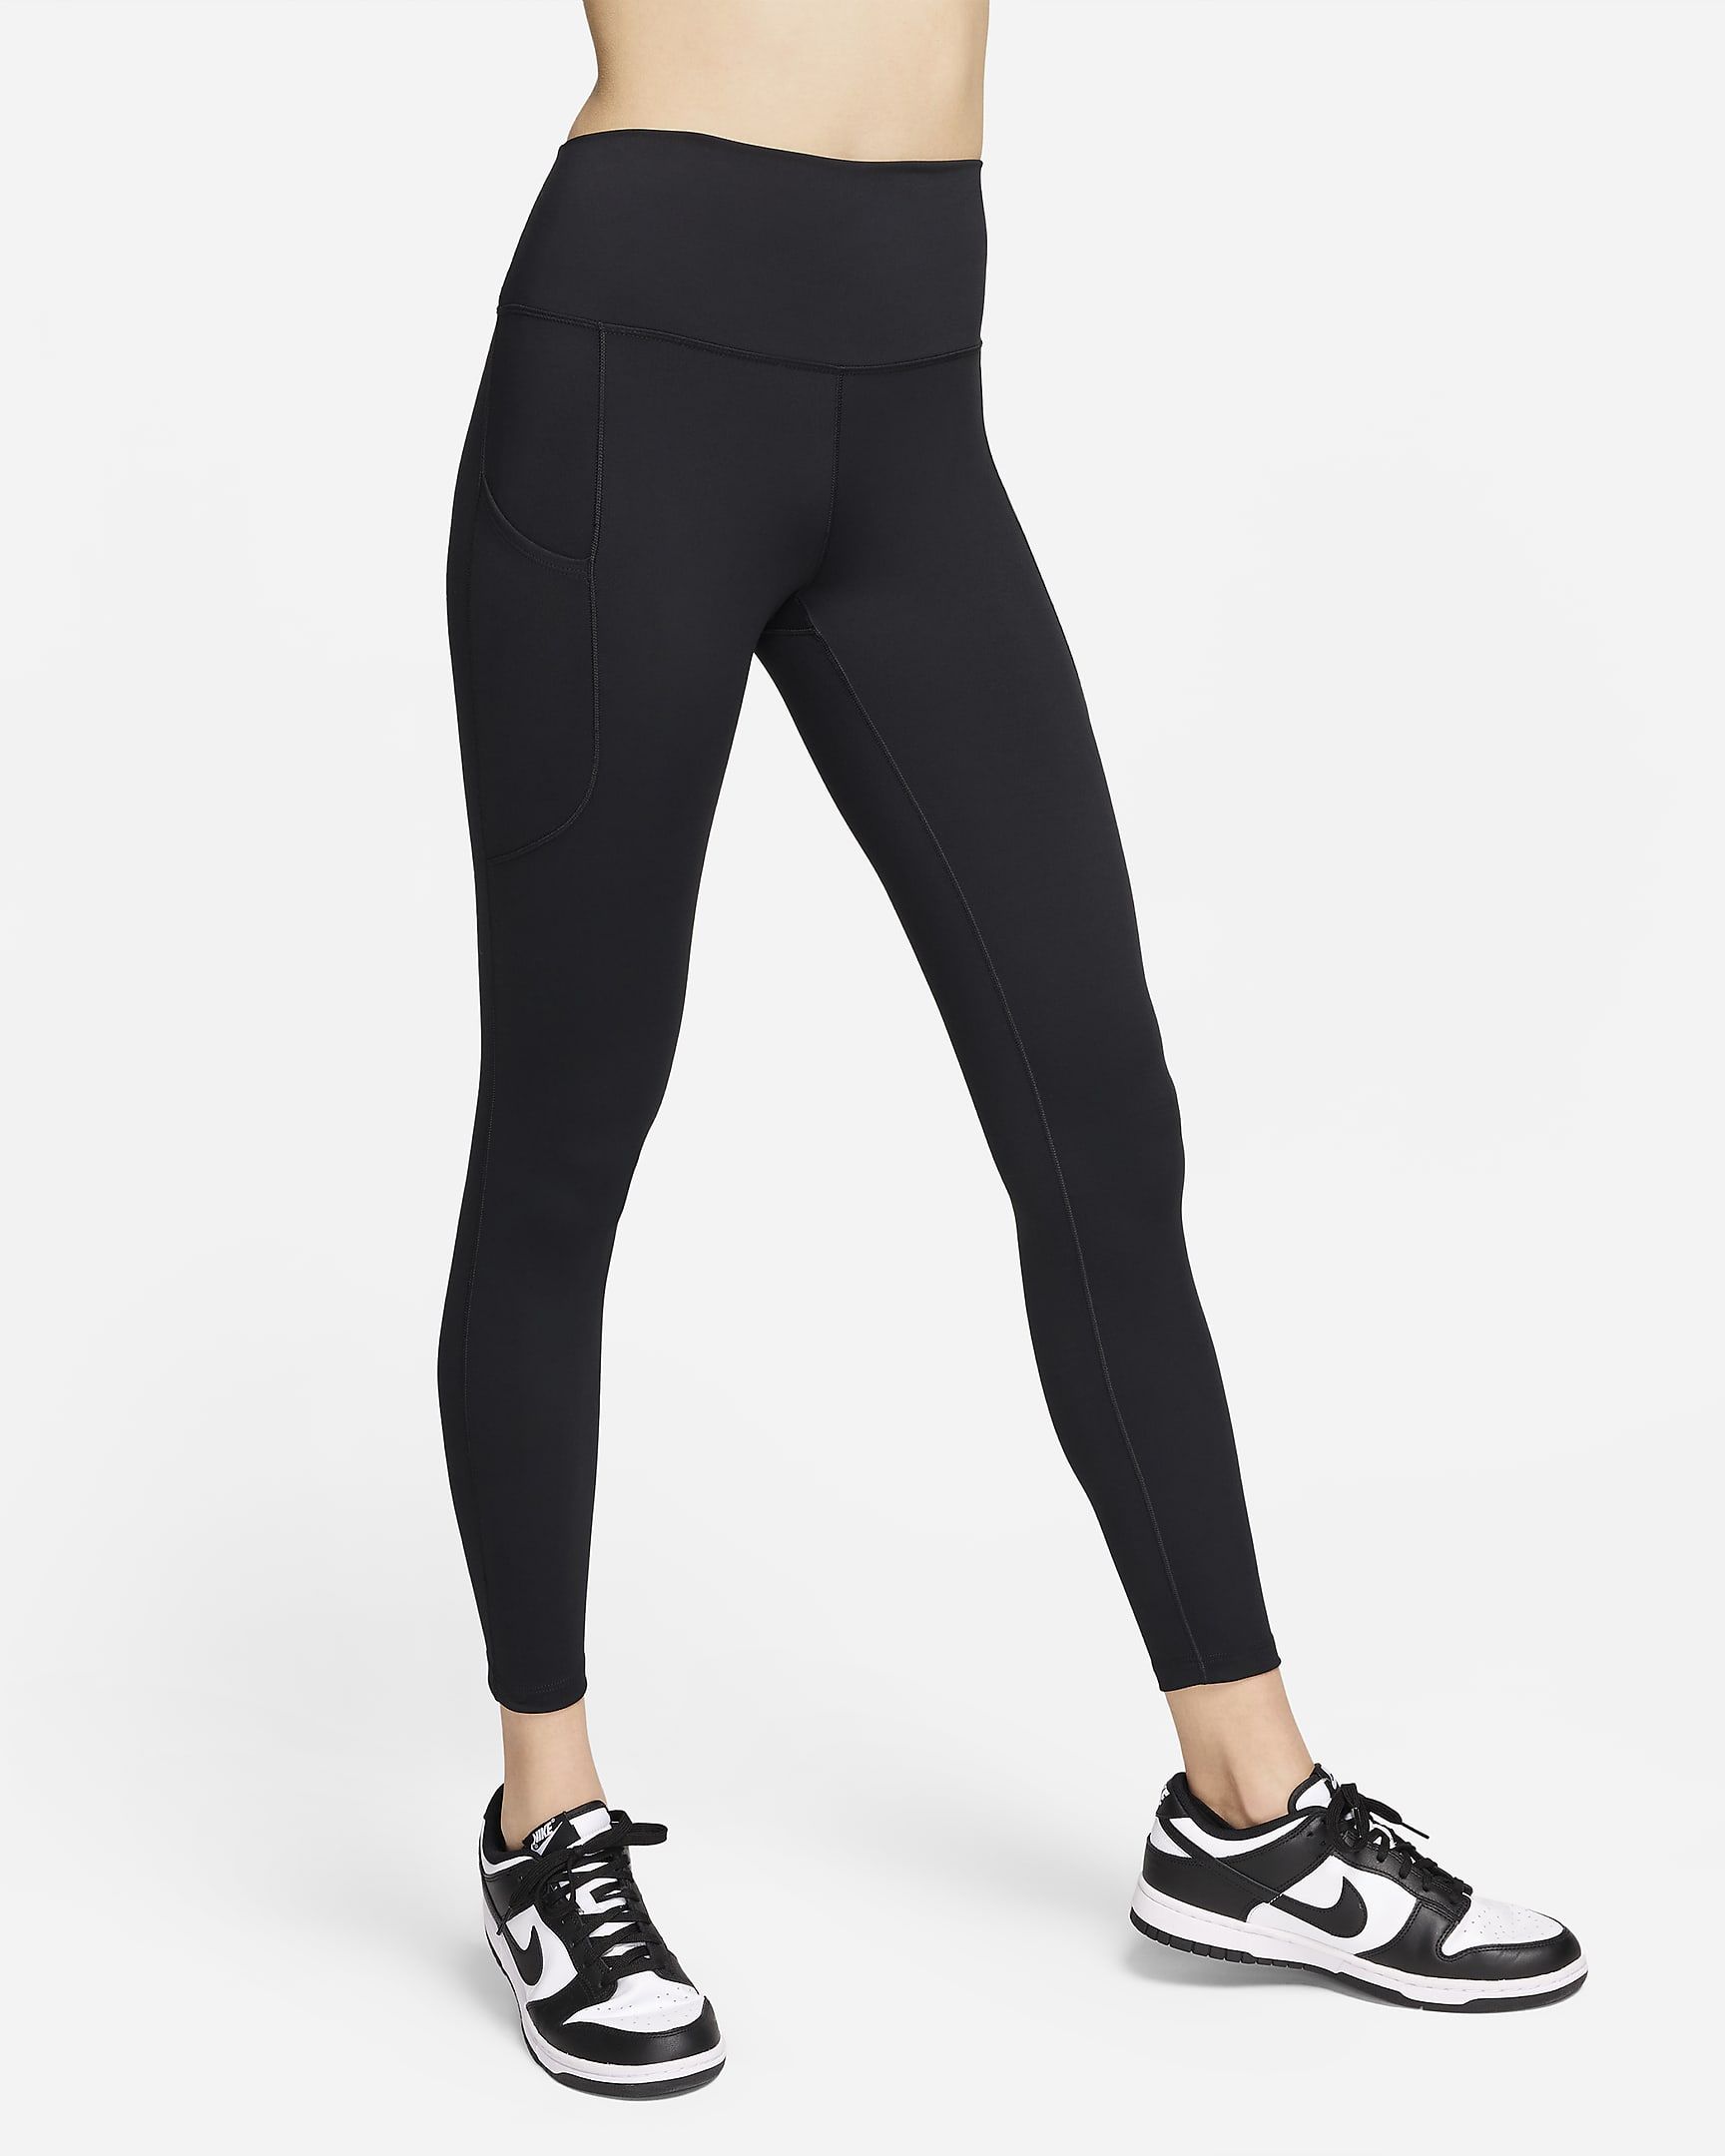 Nike One Women's High-Waisted 7/8 Leggings with Pockets. Nike.com | Nike (US)